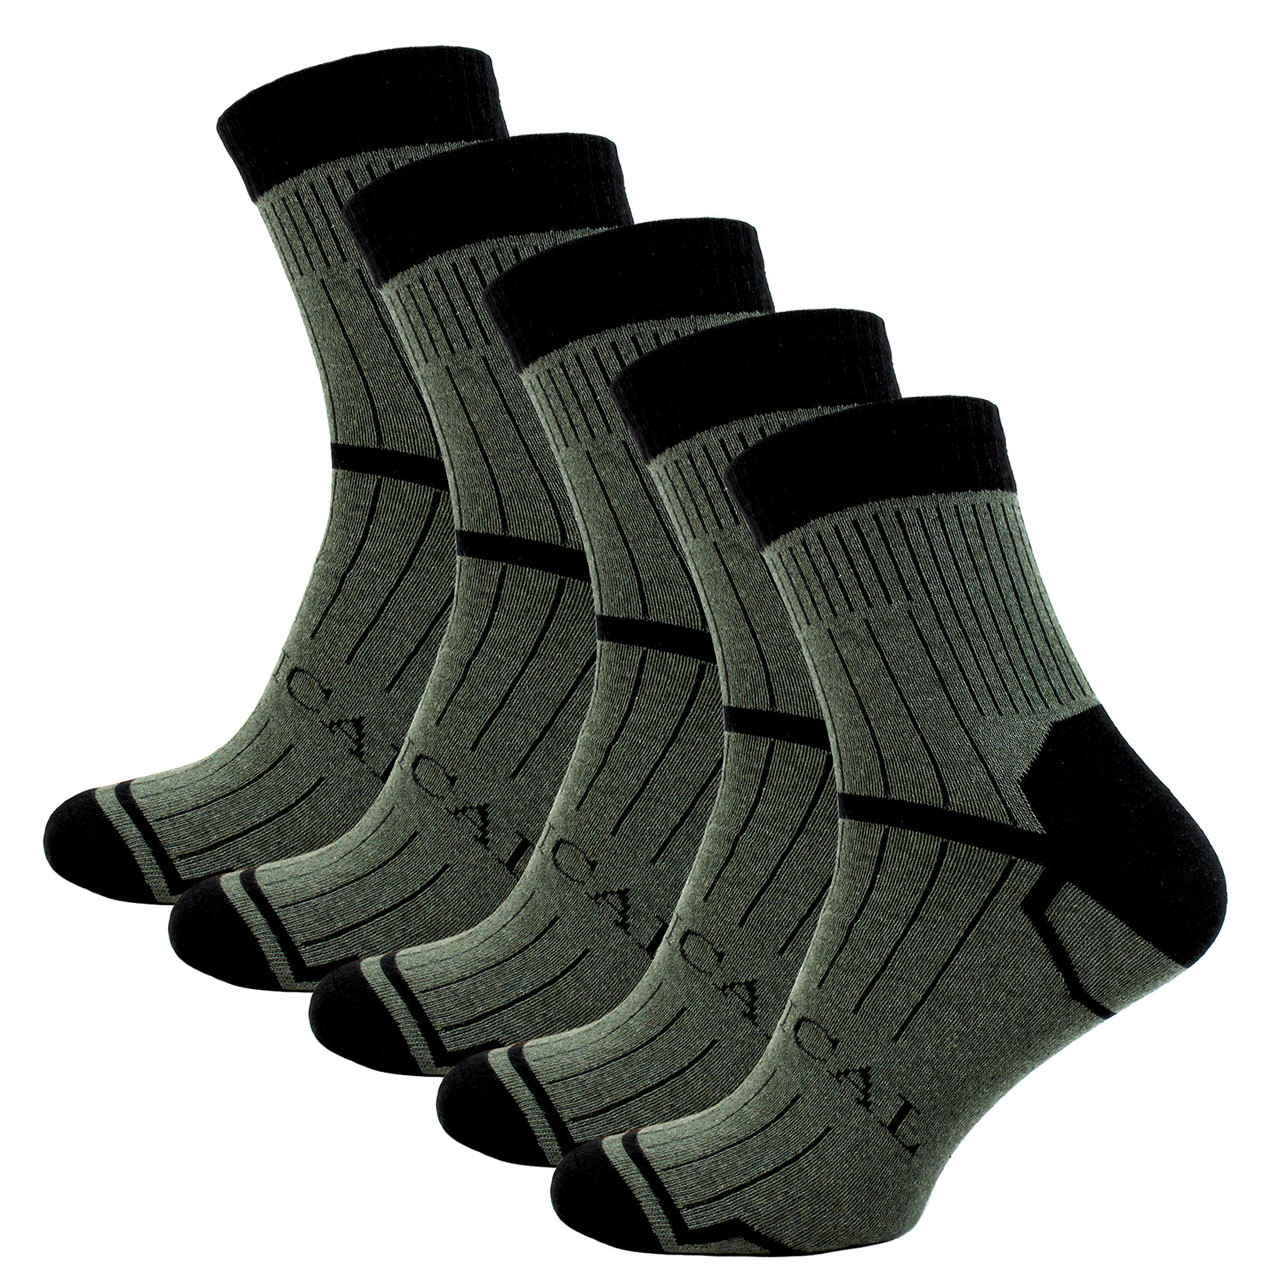 Упаковка Літні тактичні шкарпетки ЗСУ 10 пар 41-45 Хакі Tactical армійські носки військові